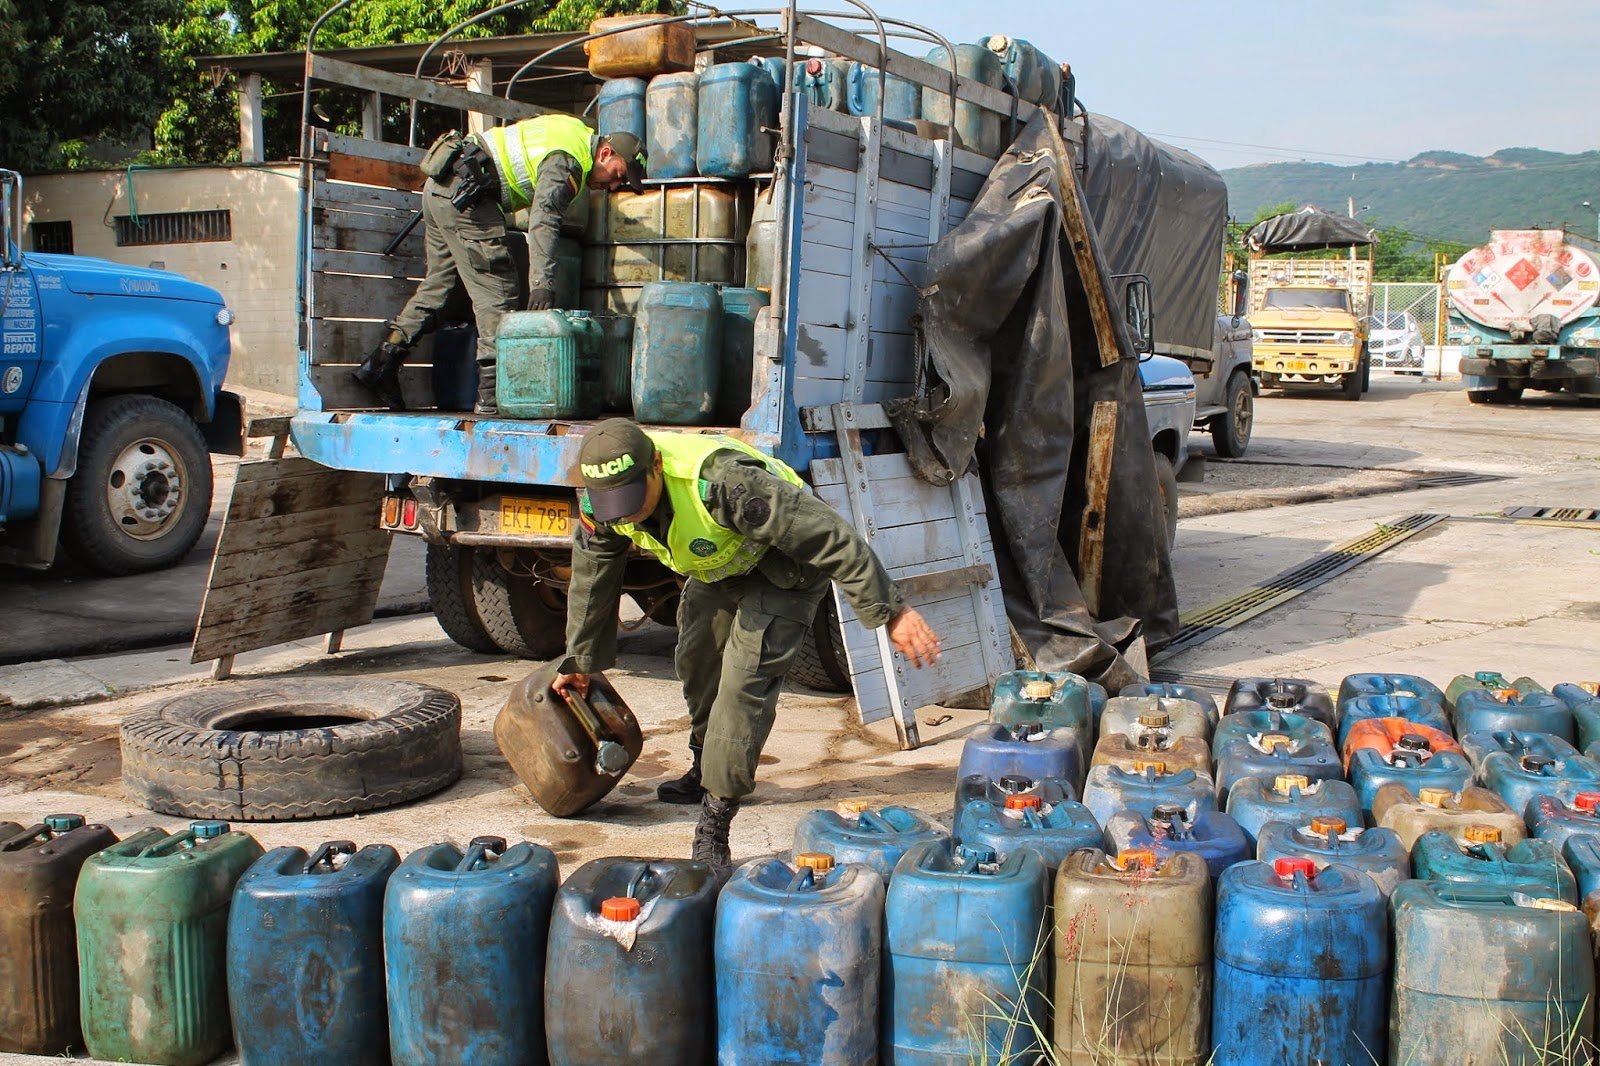 Gasolina, narcotráfico y contrabando en la frontera colombo-venezolana